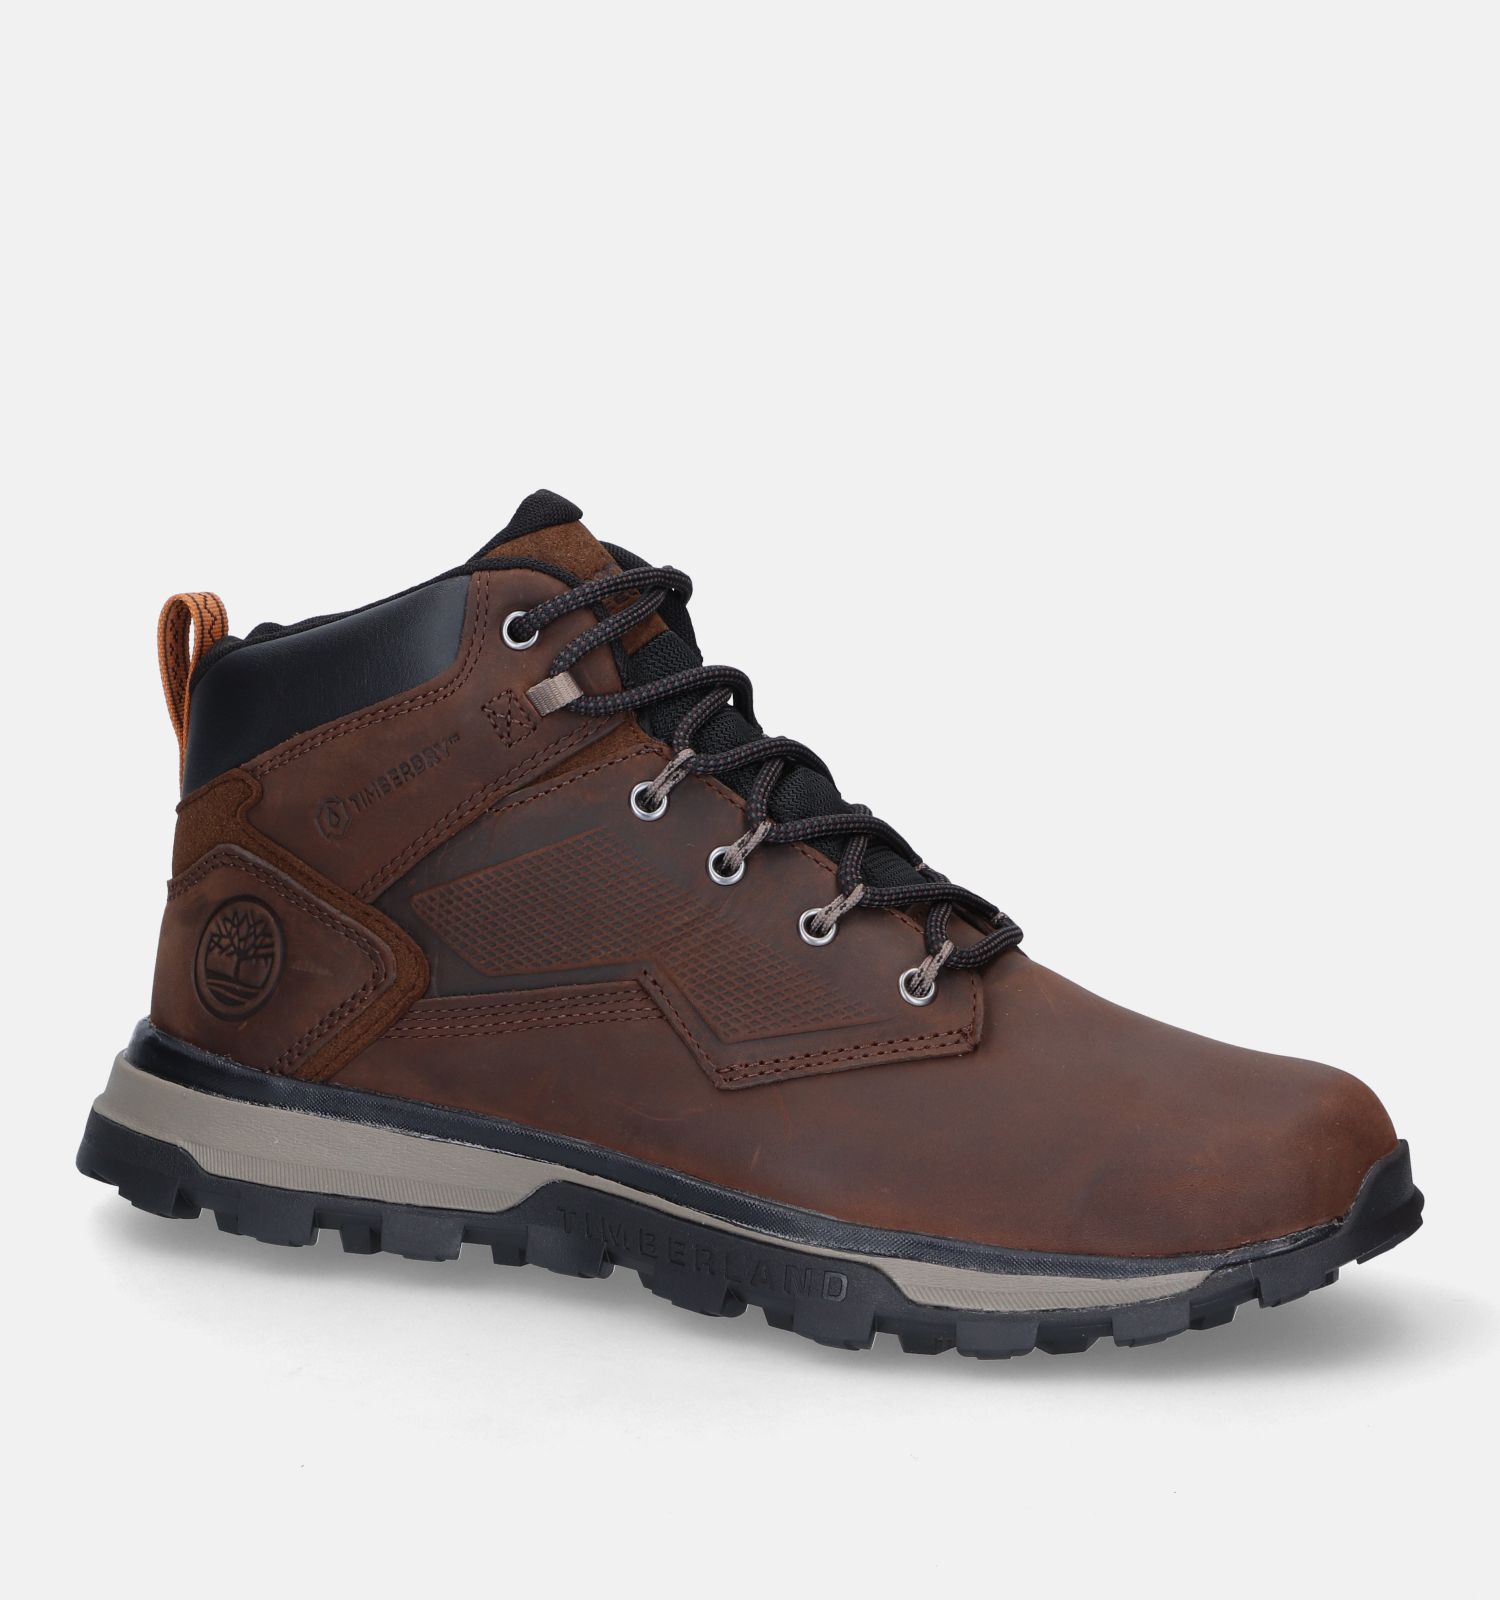 Timberland Treeline Trekker WP Bruine Wandelschoenen | Heren Boots,Outdoorschoenen